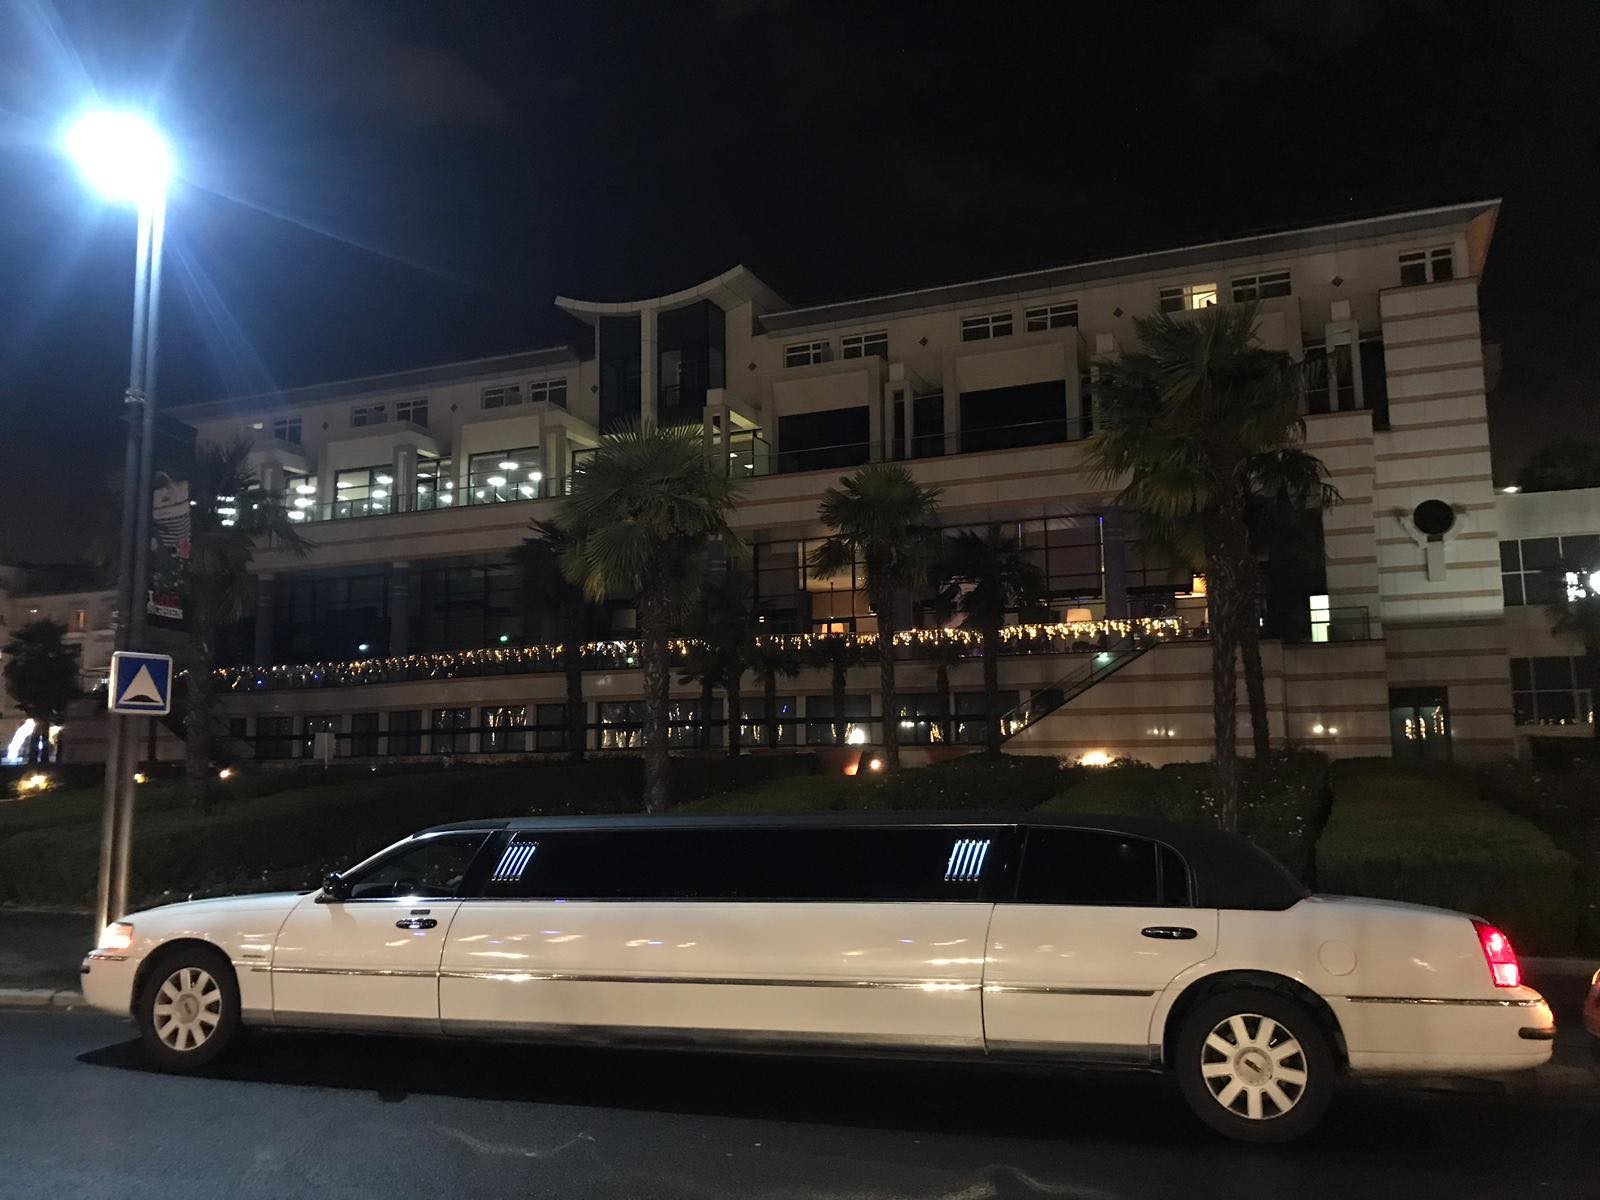 Location limousines lyon